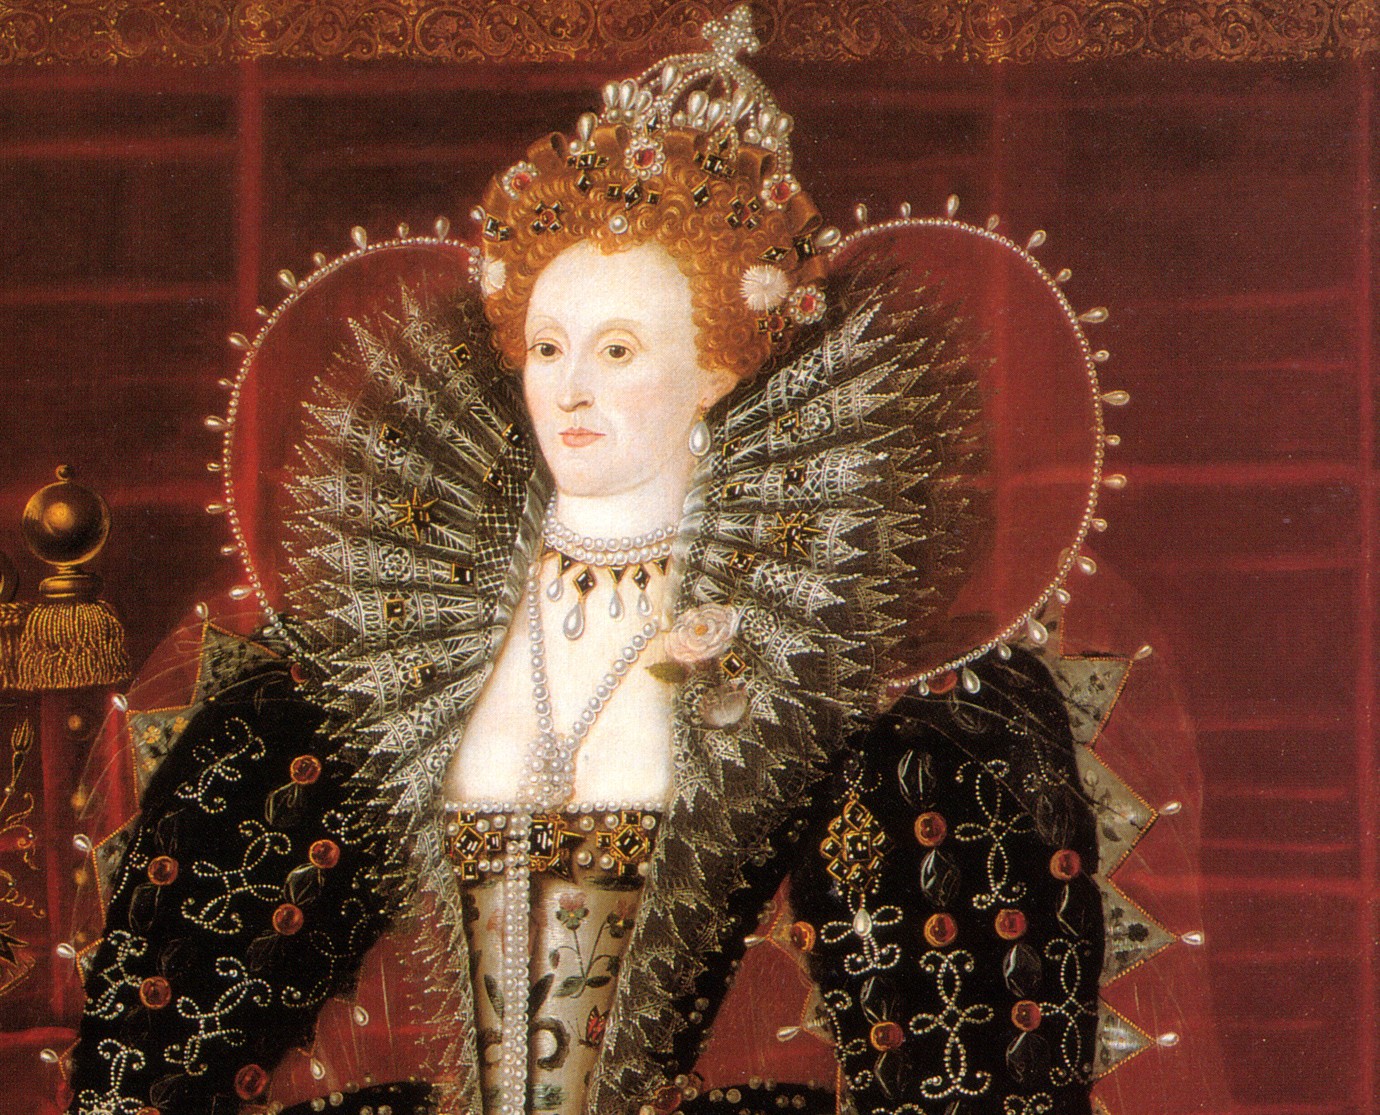 Retrato da Rainha Elizabeth I da Inglaterra, no final do século XVI.